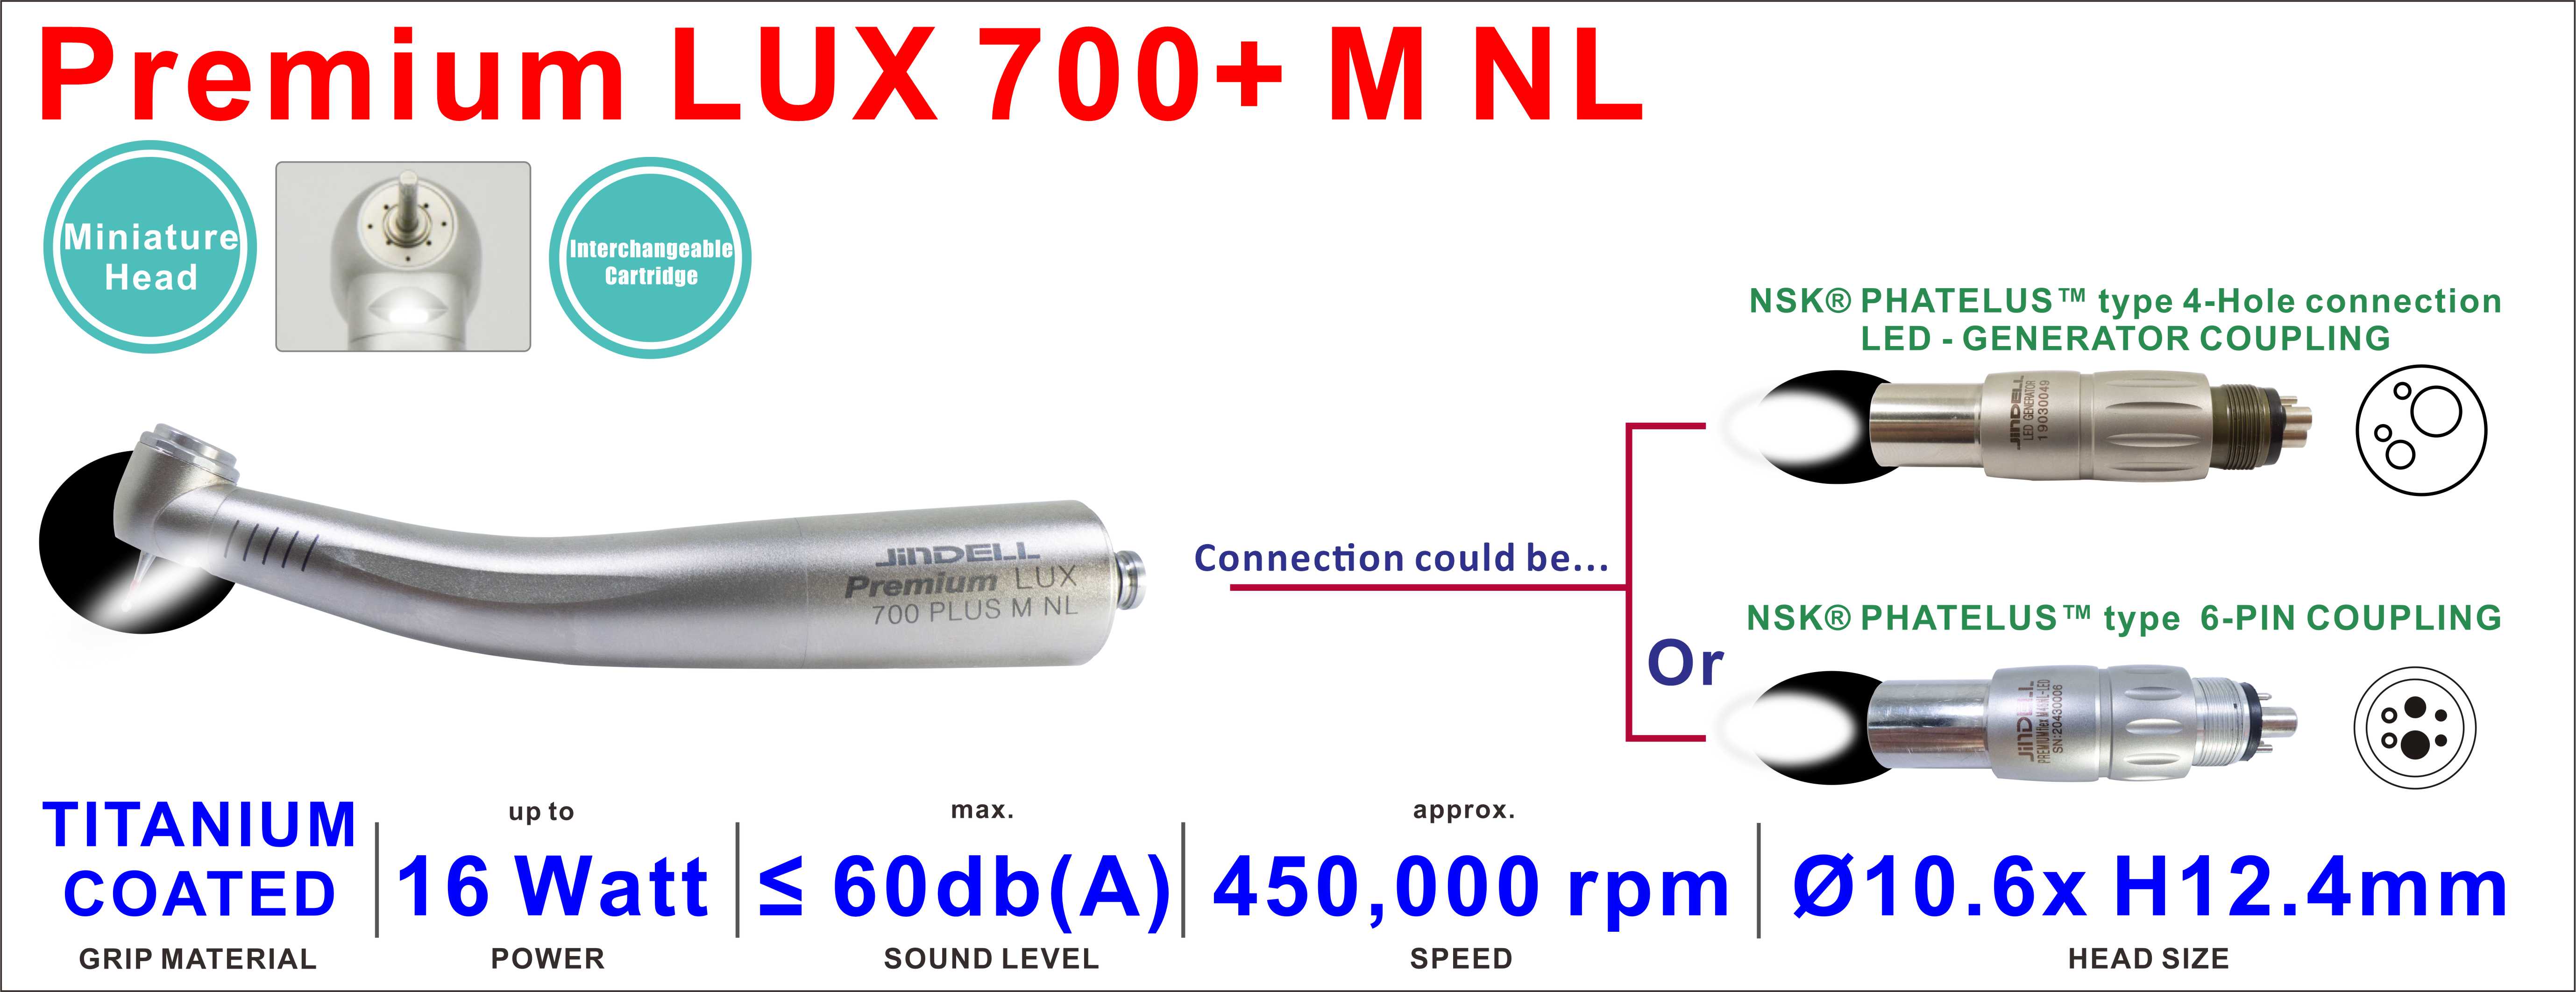 Premium LUX 700+ M NL